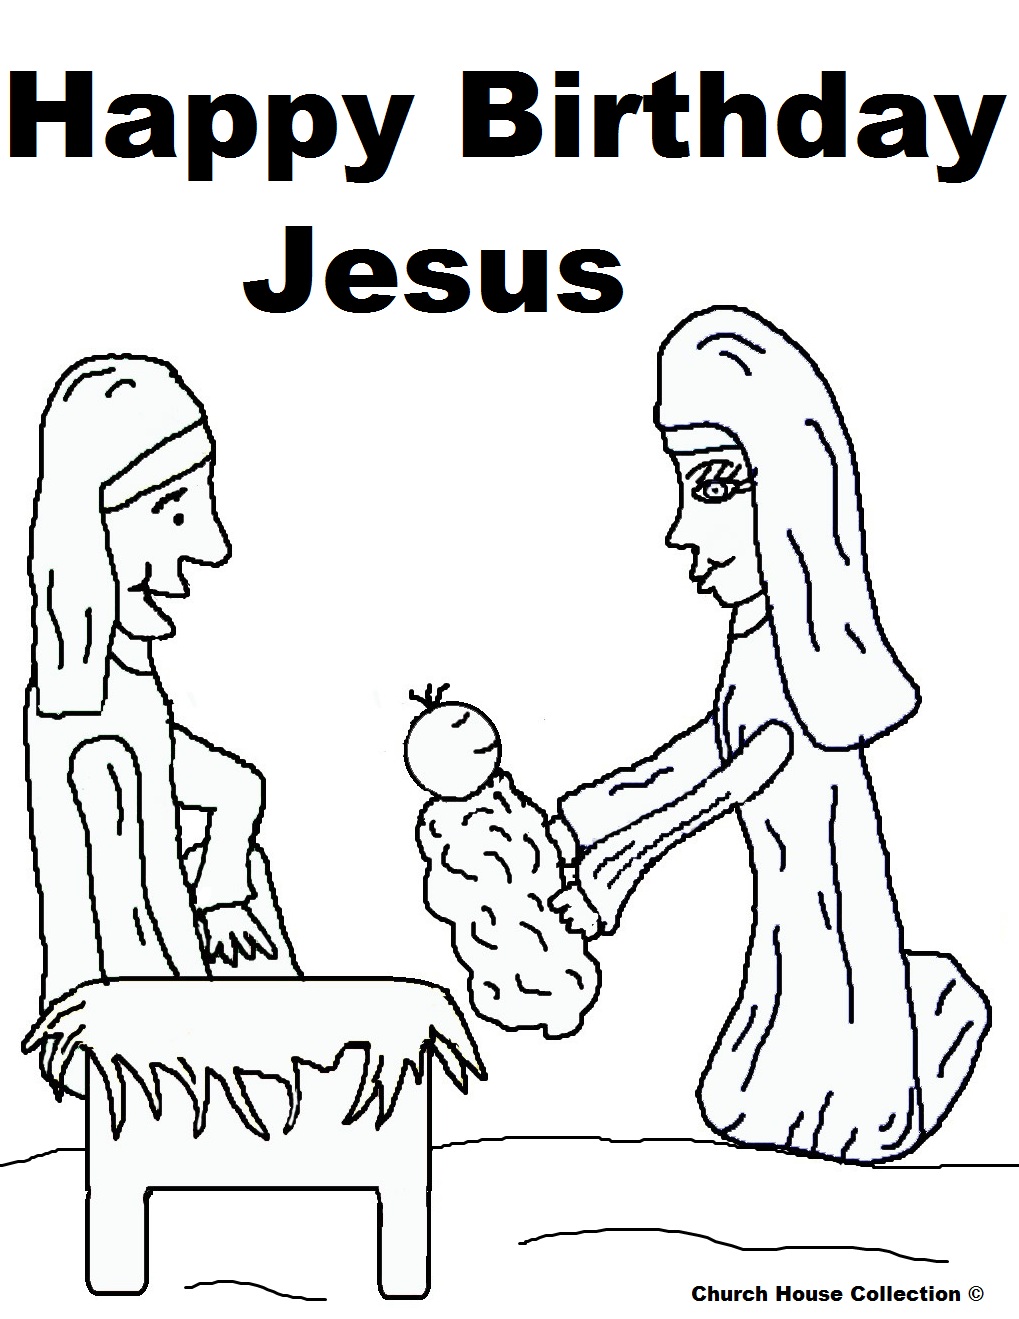 Happy Birthday Jesus Sunday School Lesson